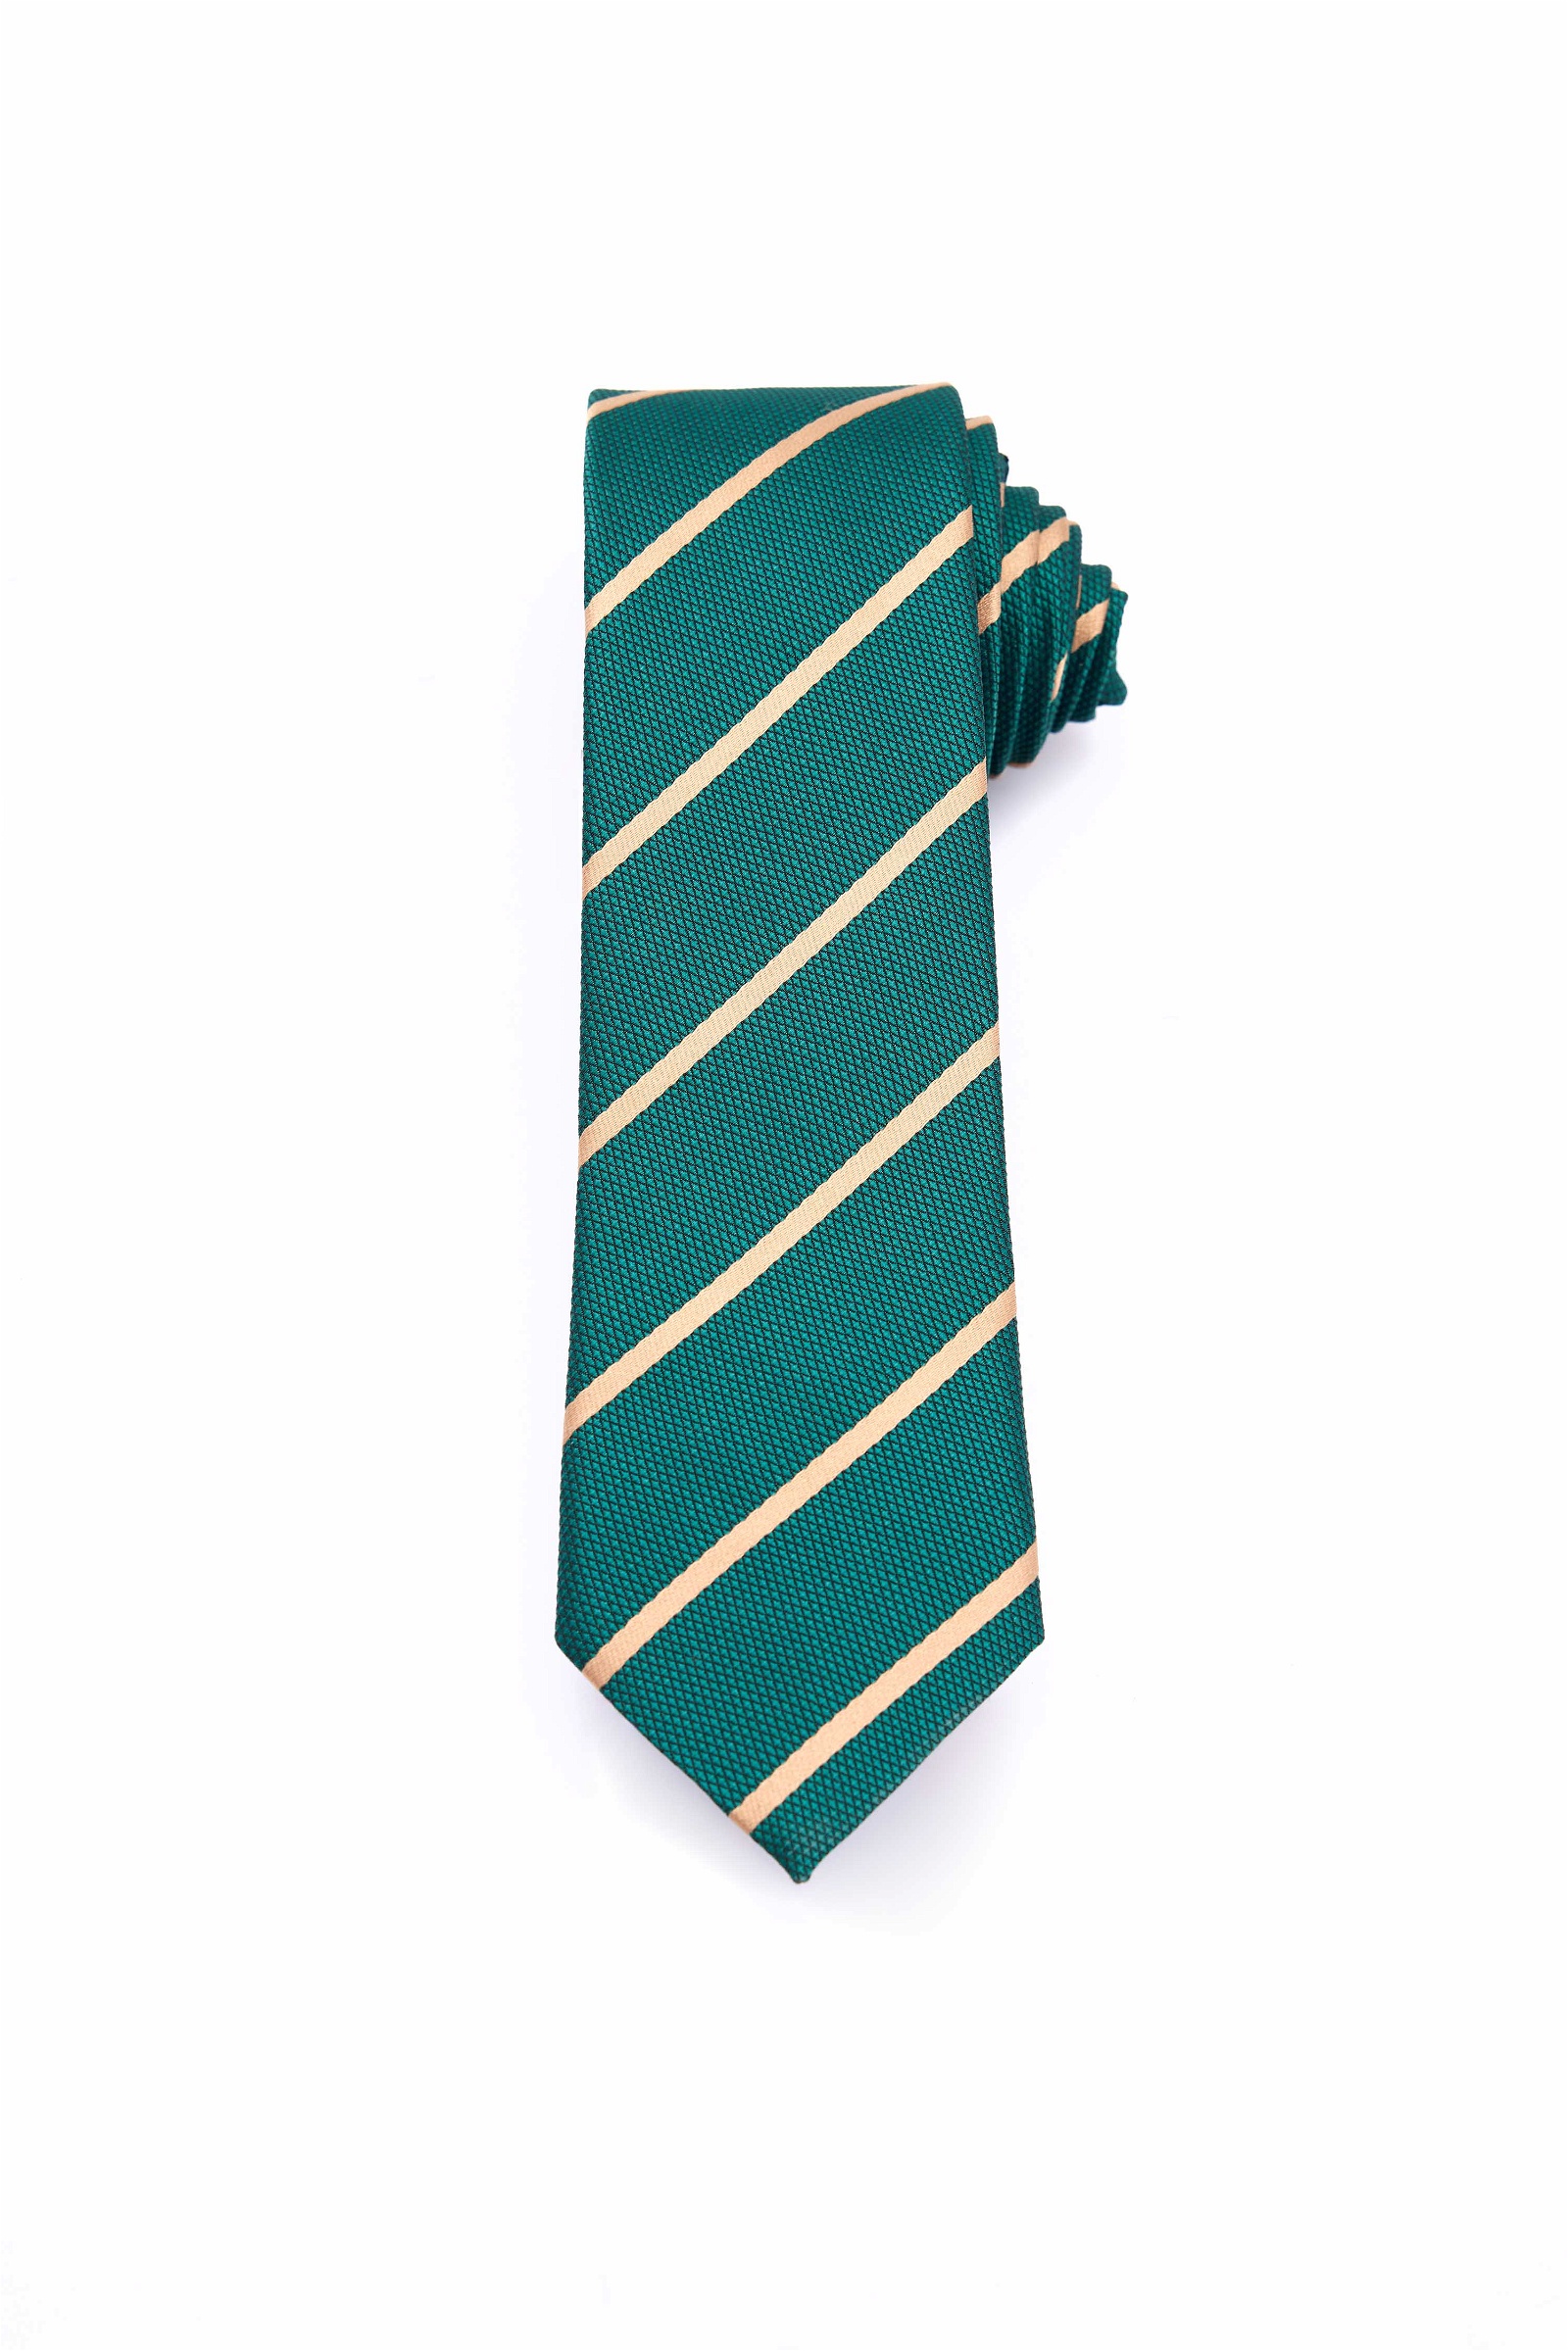  Green Tie